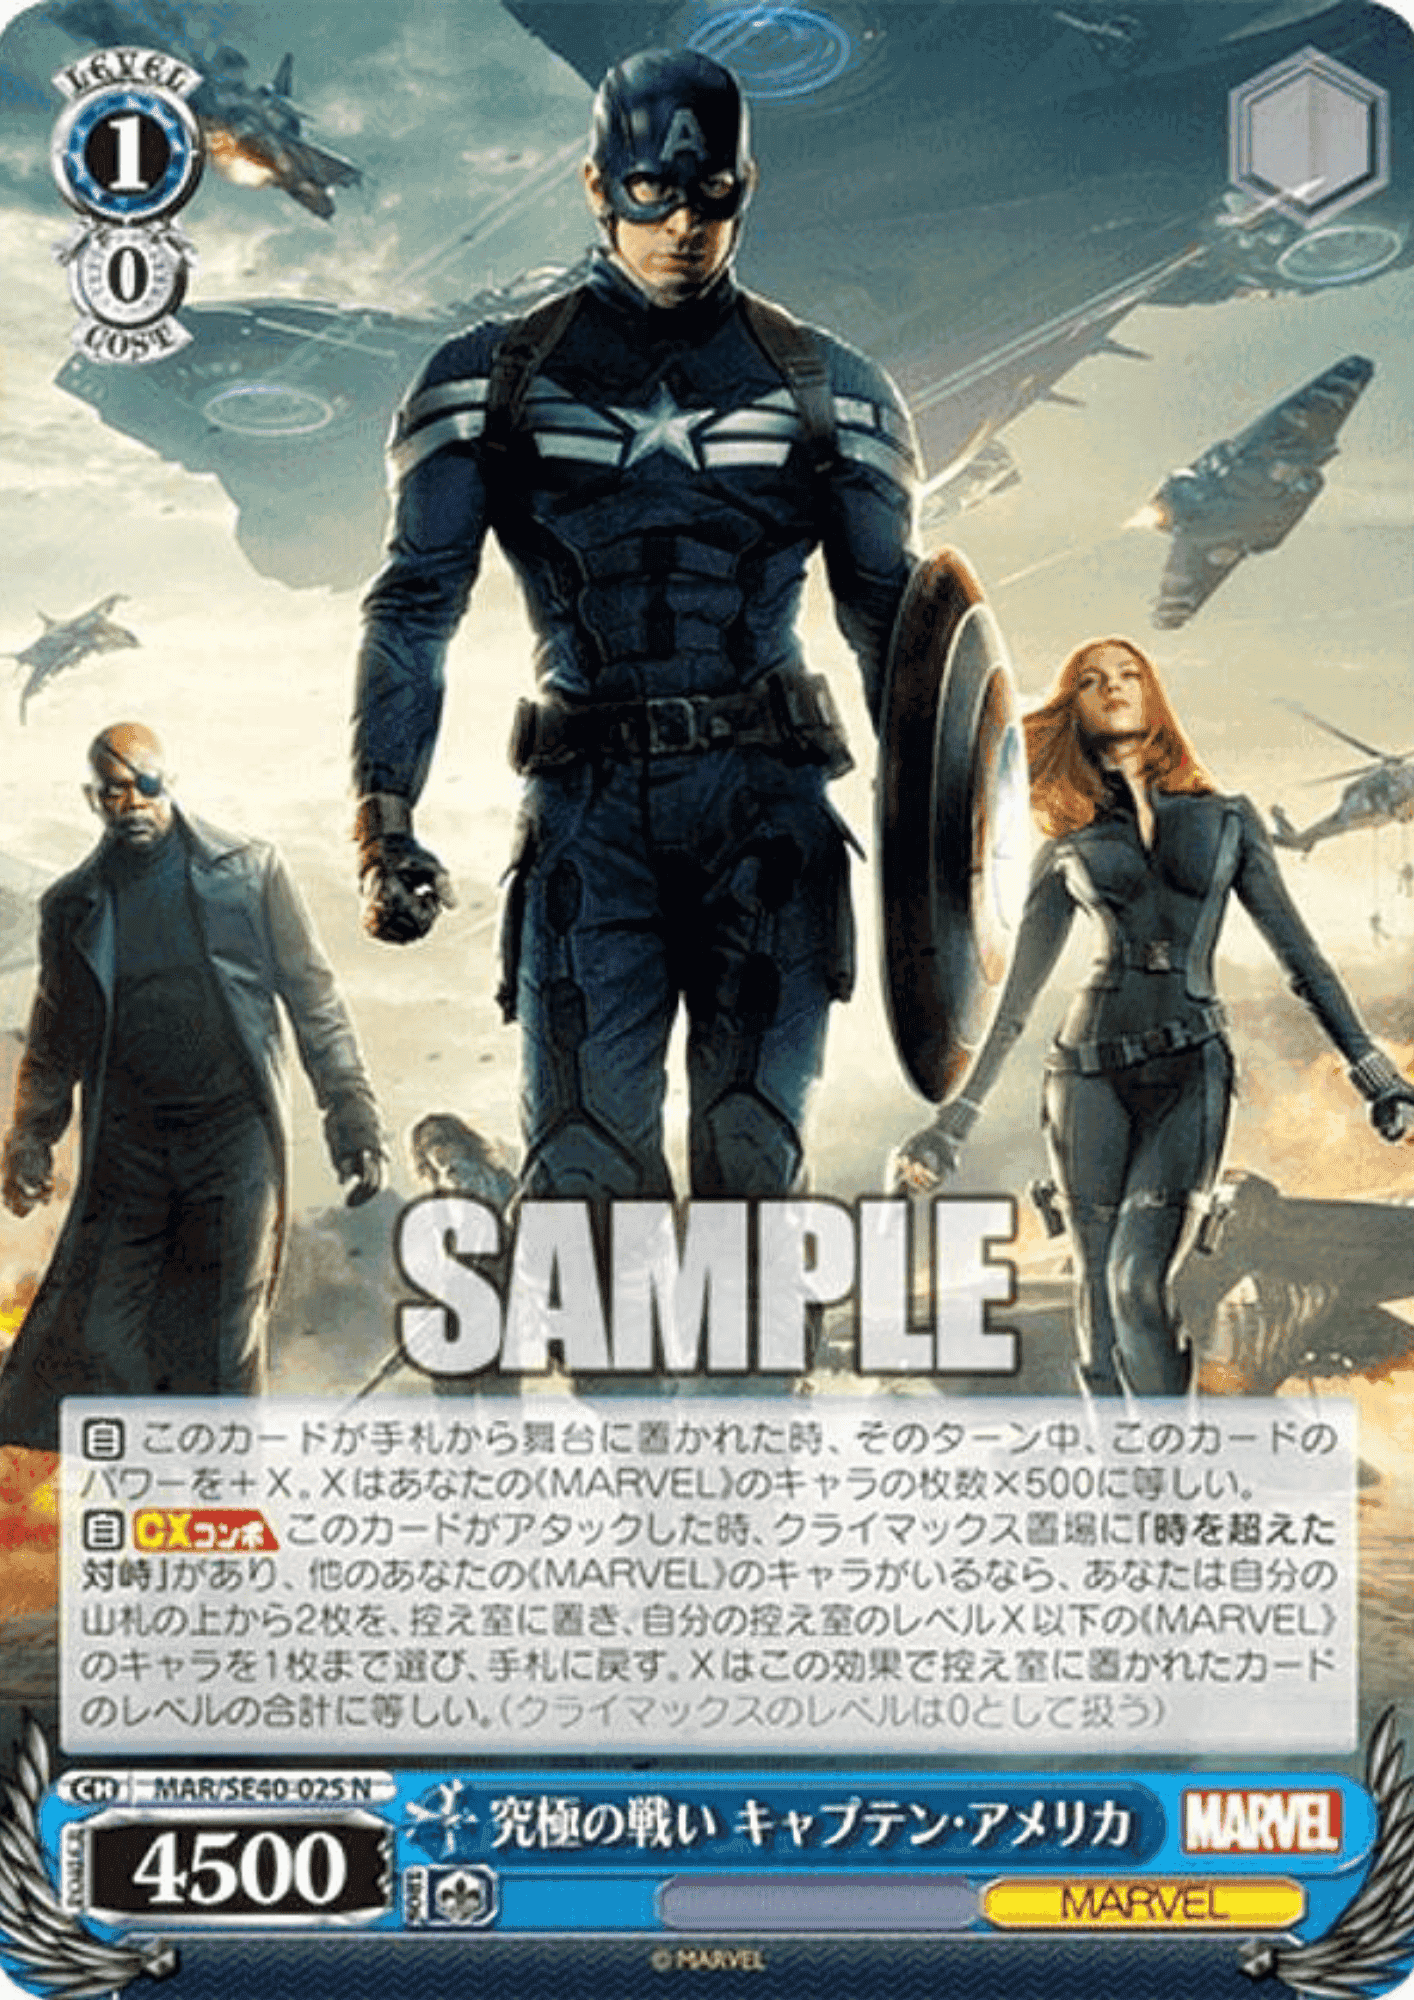 Captain America MAR/SE40-025 N | Weiss Schwarz ChitoroShop